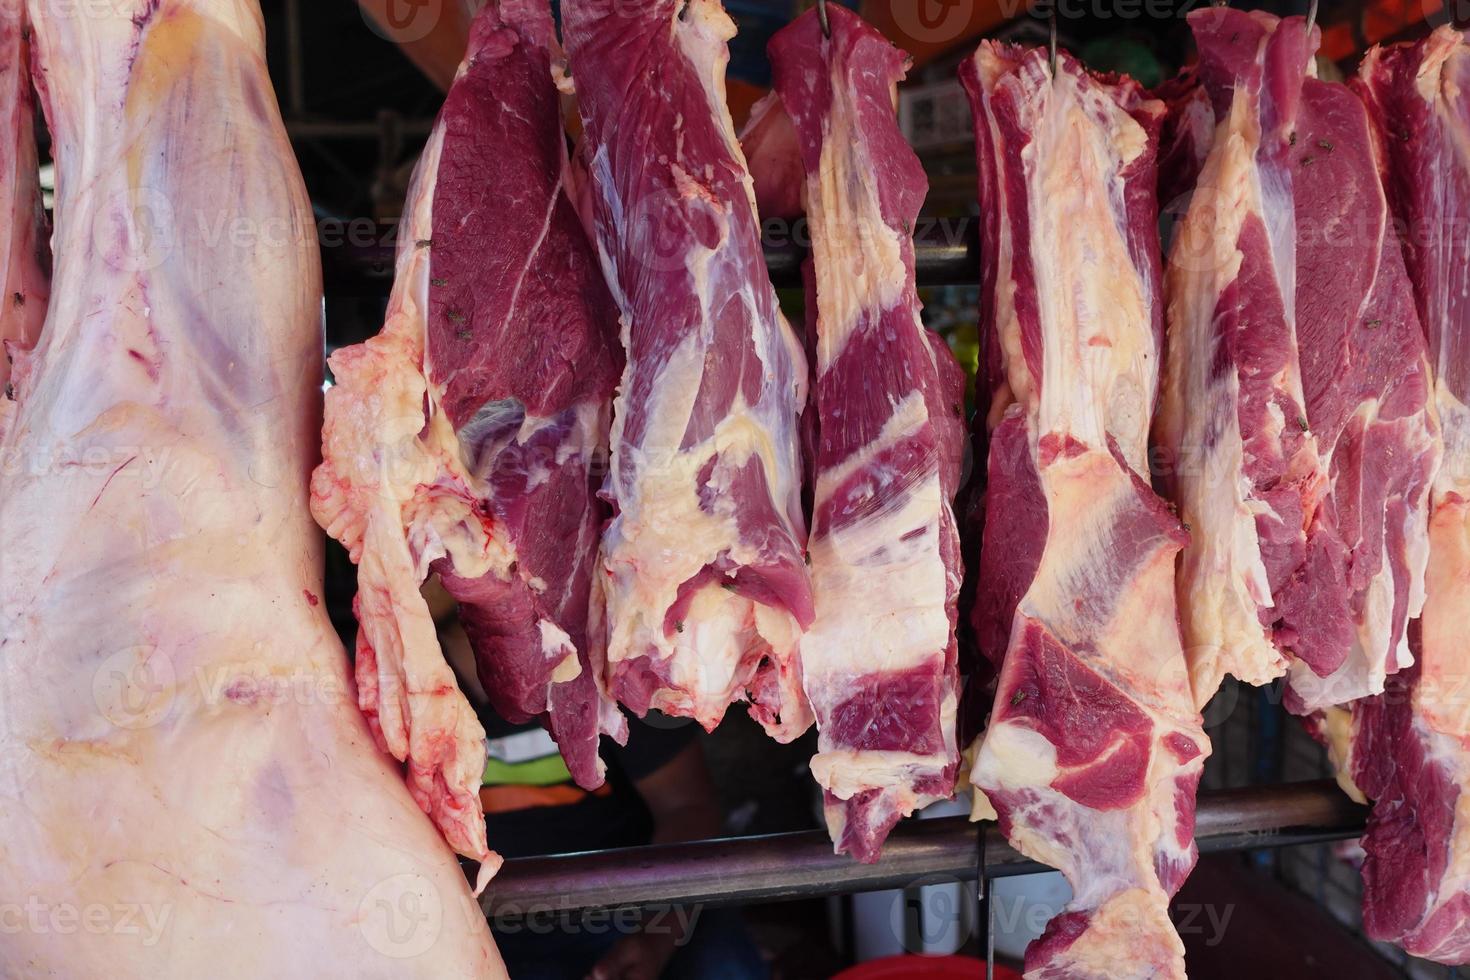 primo piano di esposizione di carne cruda in vendita presso un negozio locale in bangladesh foto